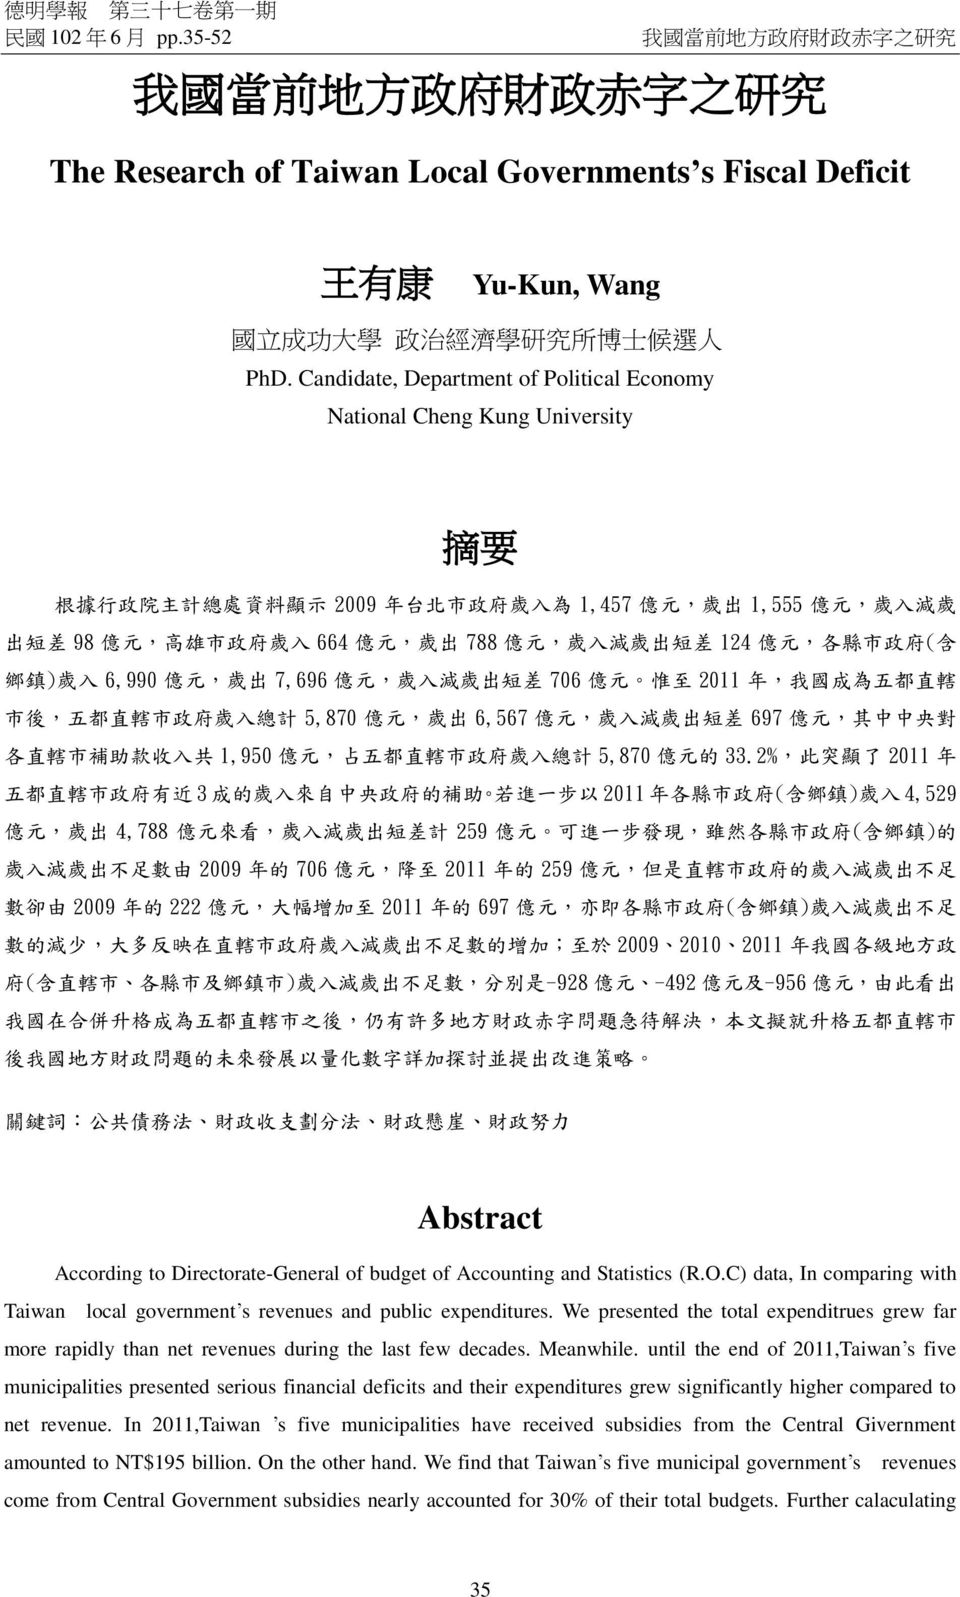 Candidate, Department of Political Economy National Cheng Kung University 摘 要 根 據 行 政 院 主 計 總 處 資 料 顯 示 2009 年 台 北 市 政 府 歲 入 為 1,457 億 元, 歲 出 1,555 億 元, 歲 入 減 歲 出 短 差 98 億 元, 高 雄 市 政 府 歲 入 664 億 元, 歲